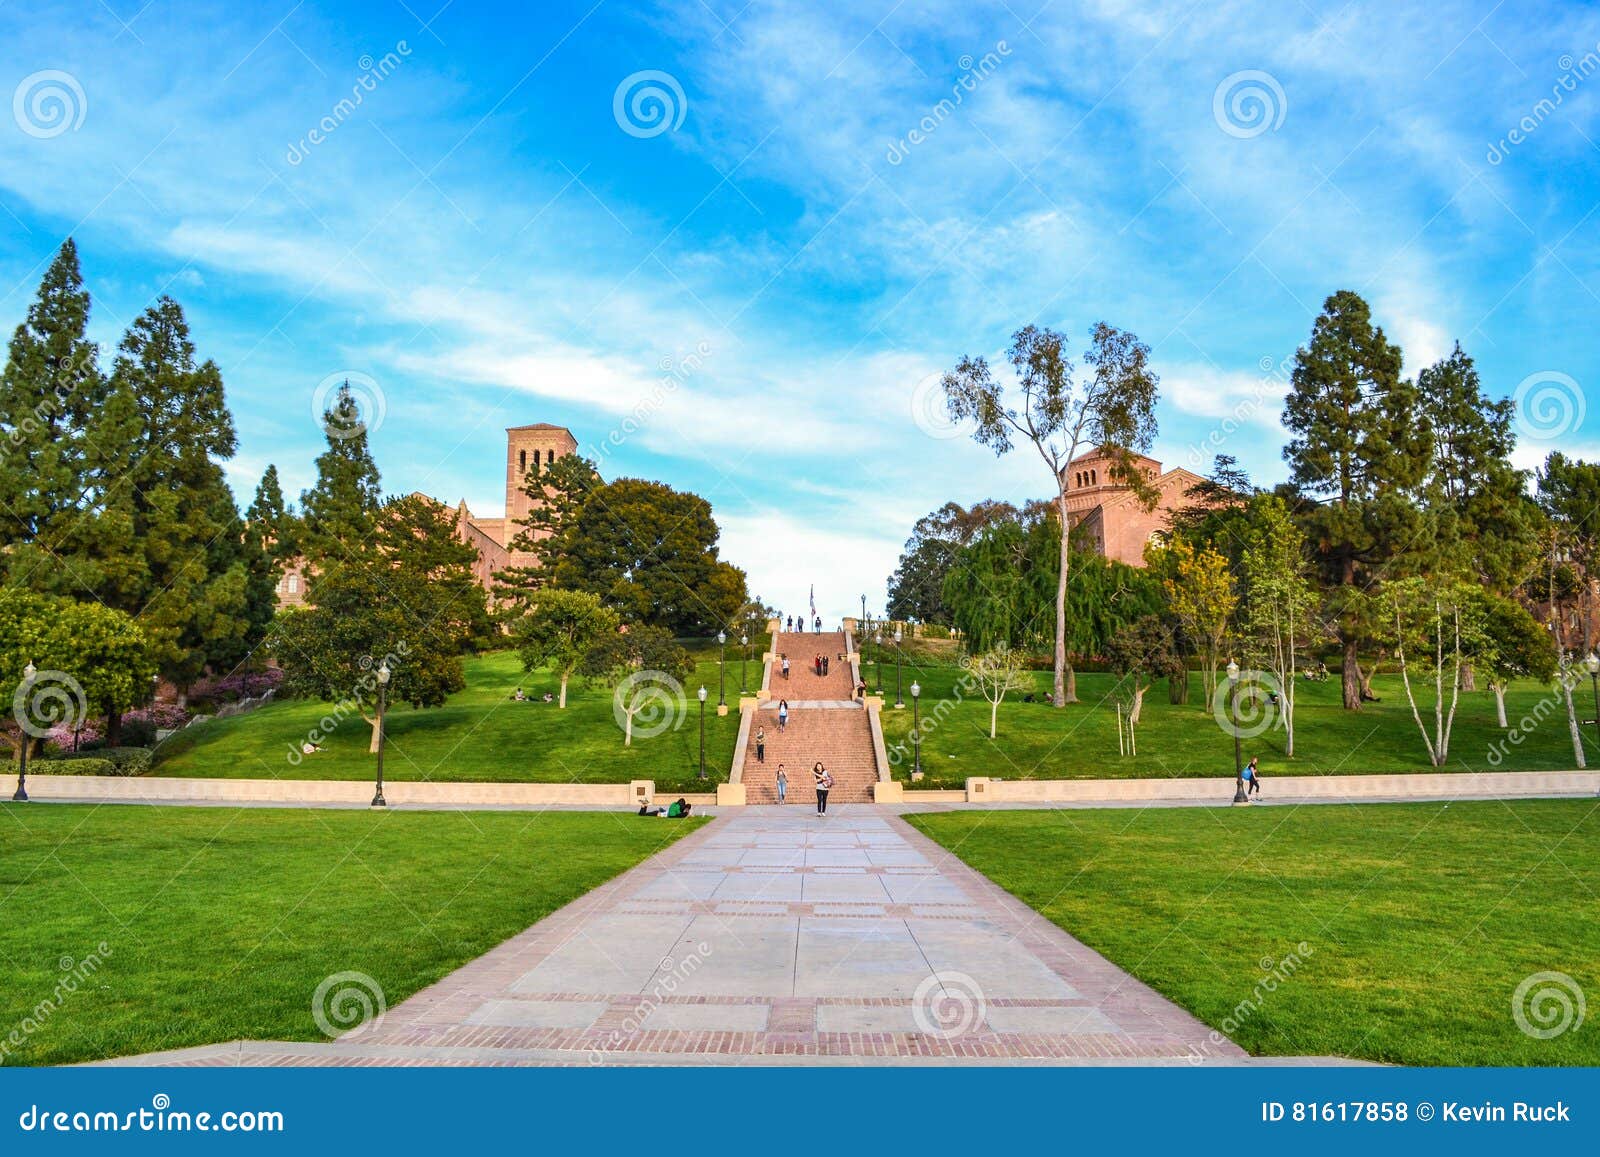 Download California Dream Landscape Wallpaper